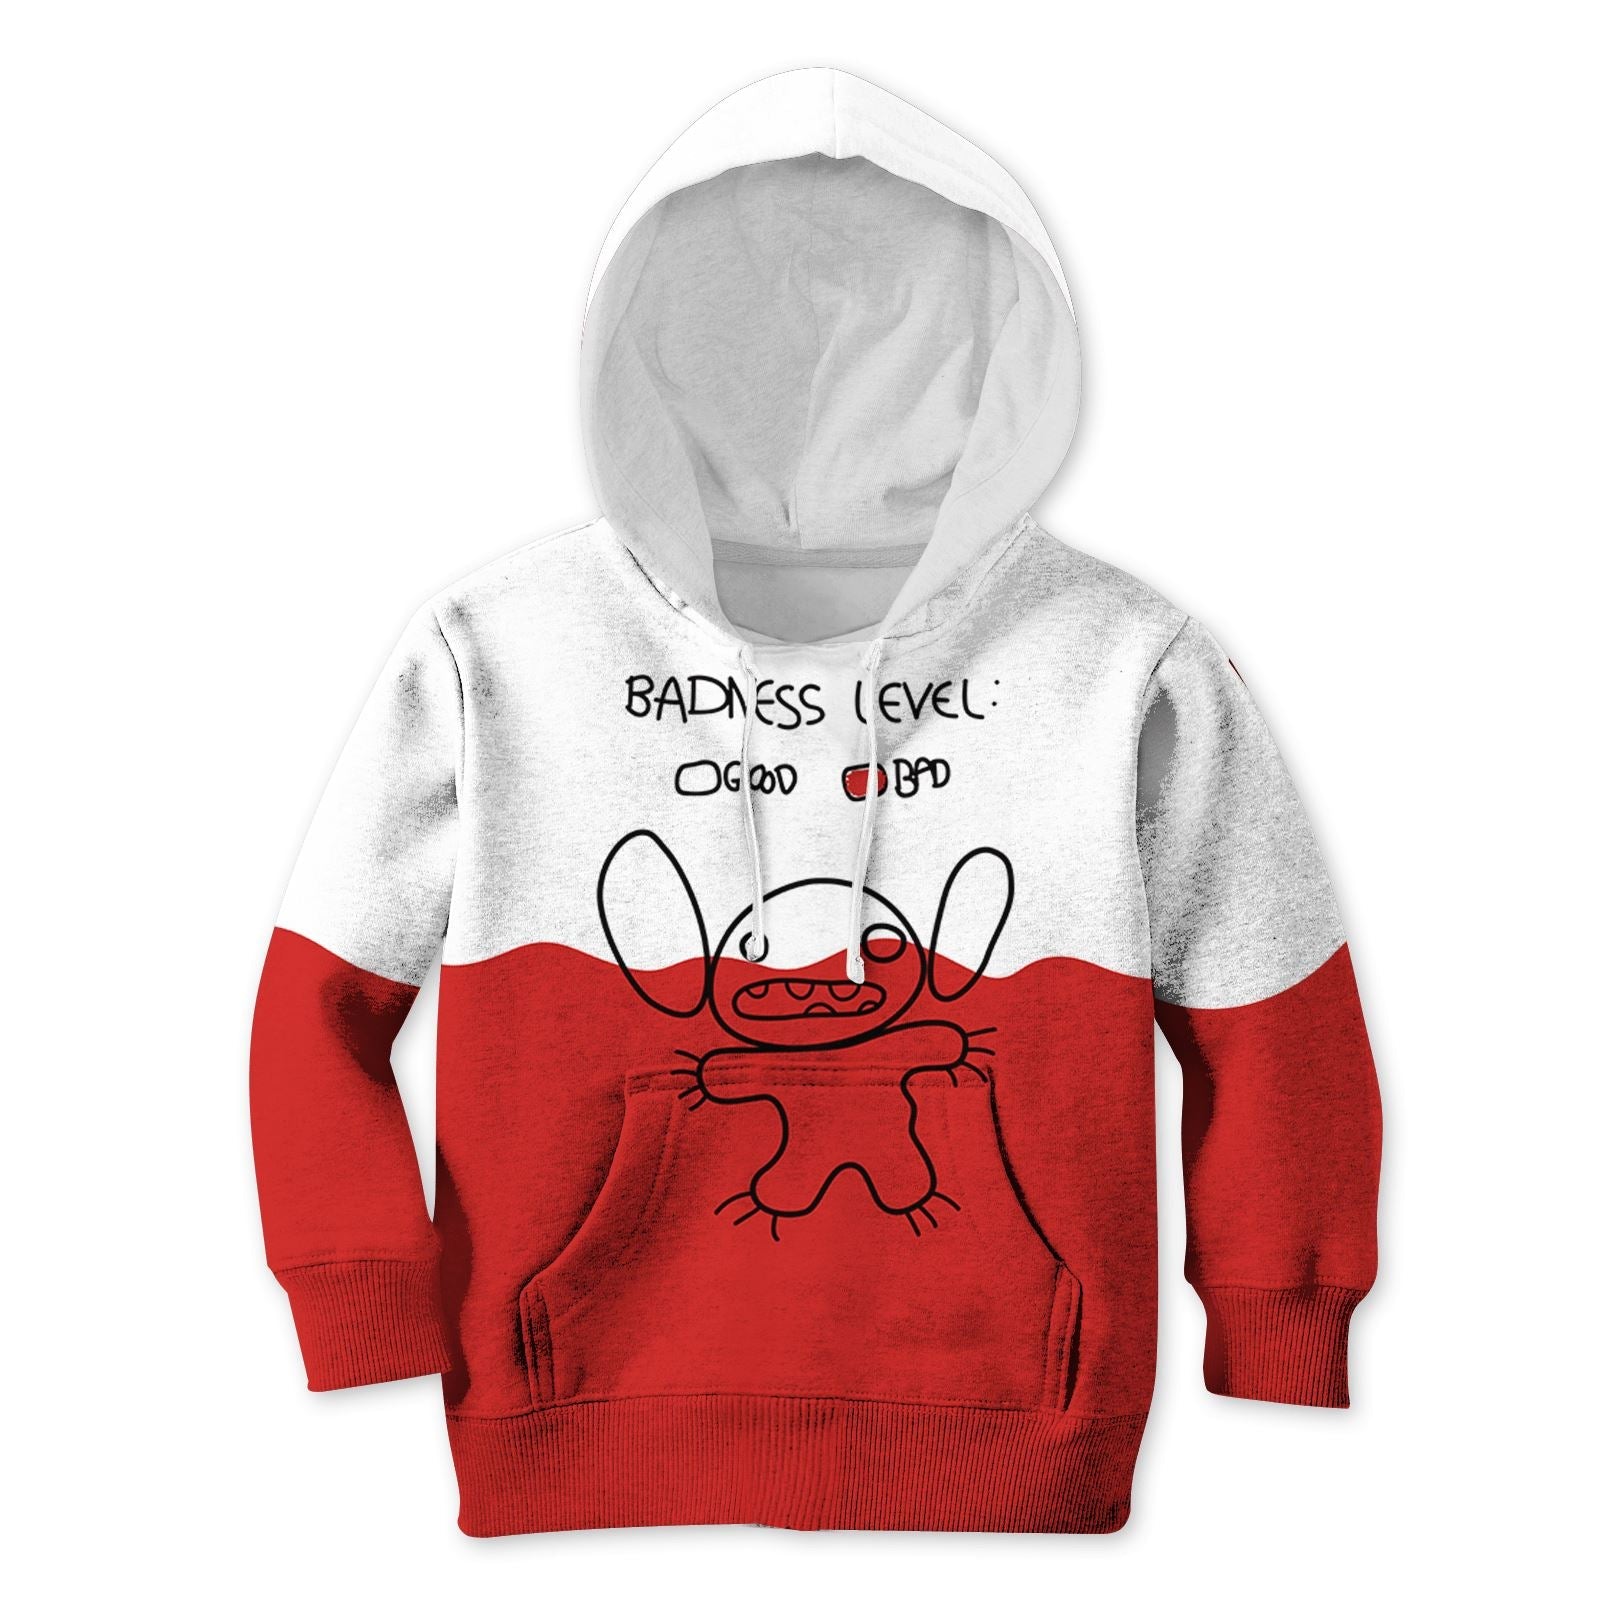 Stitch Kid Custom Hoodies T-shirt Apparel HD-MV111123K kid 3D apparel Kid Hoodie S/6-8 